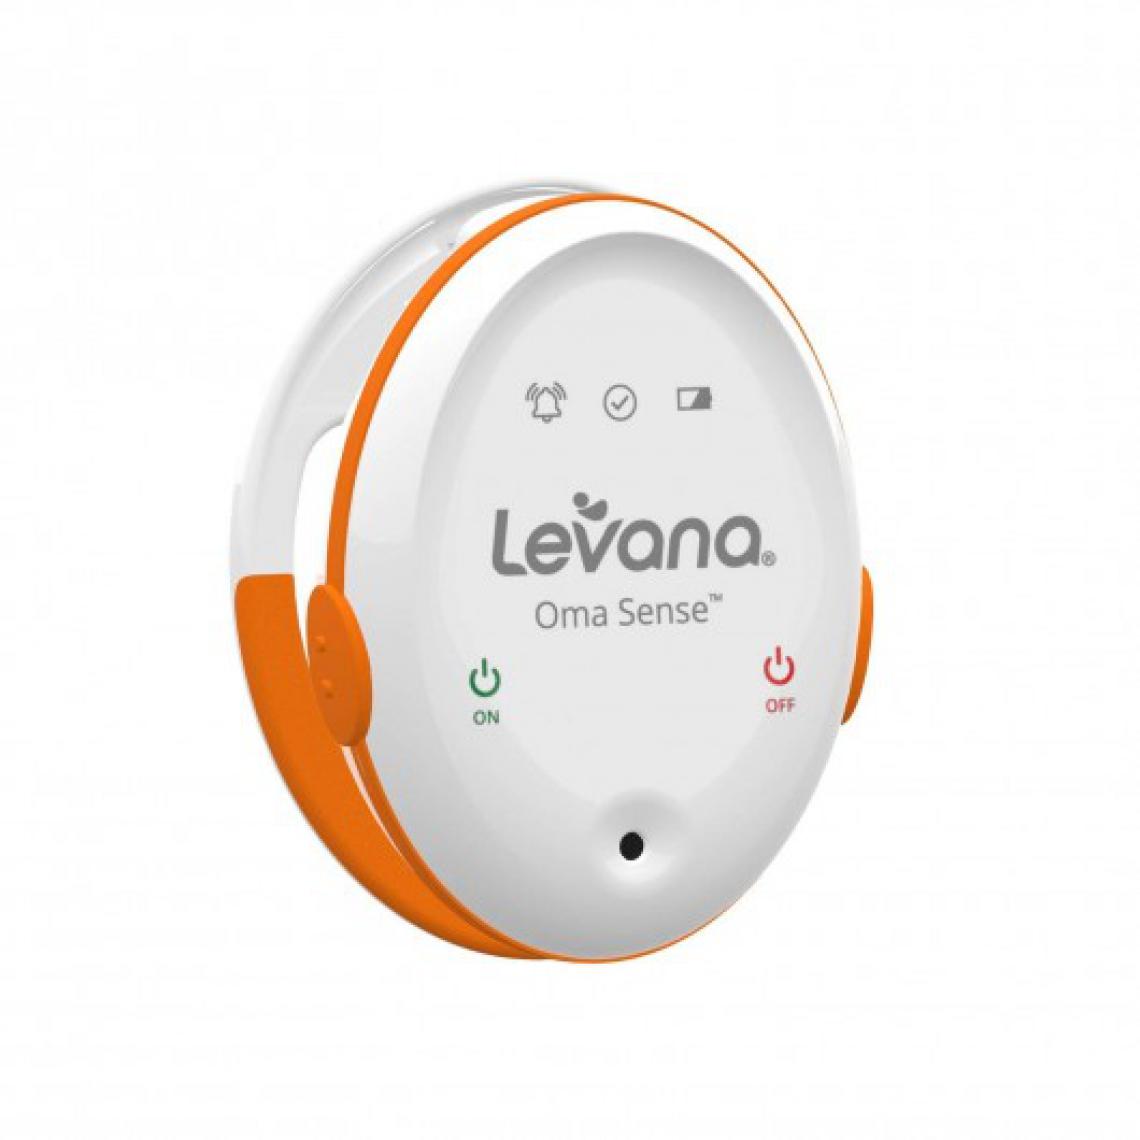 Levana - Levana Oma Sense, être alerté de la respiration de votre enfant - Babyphone connecté